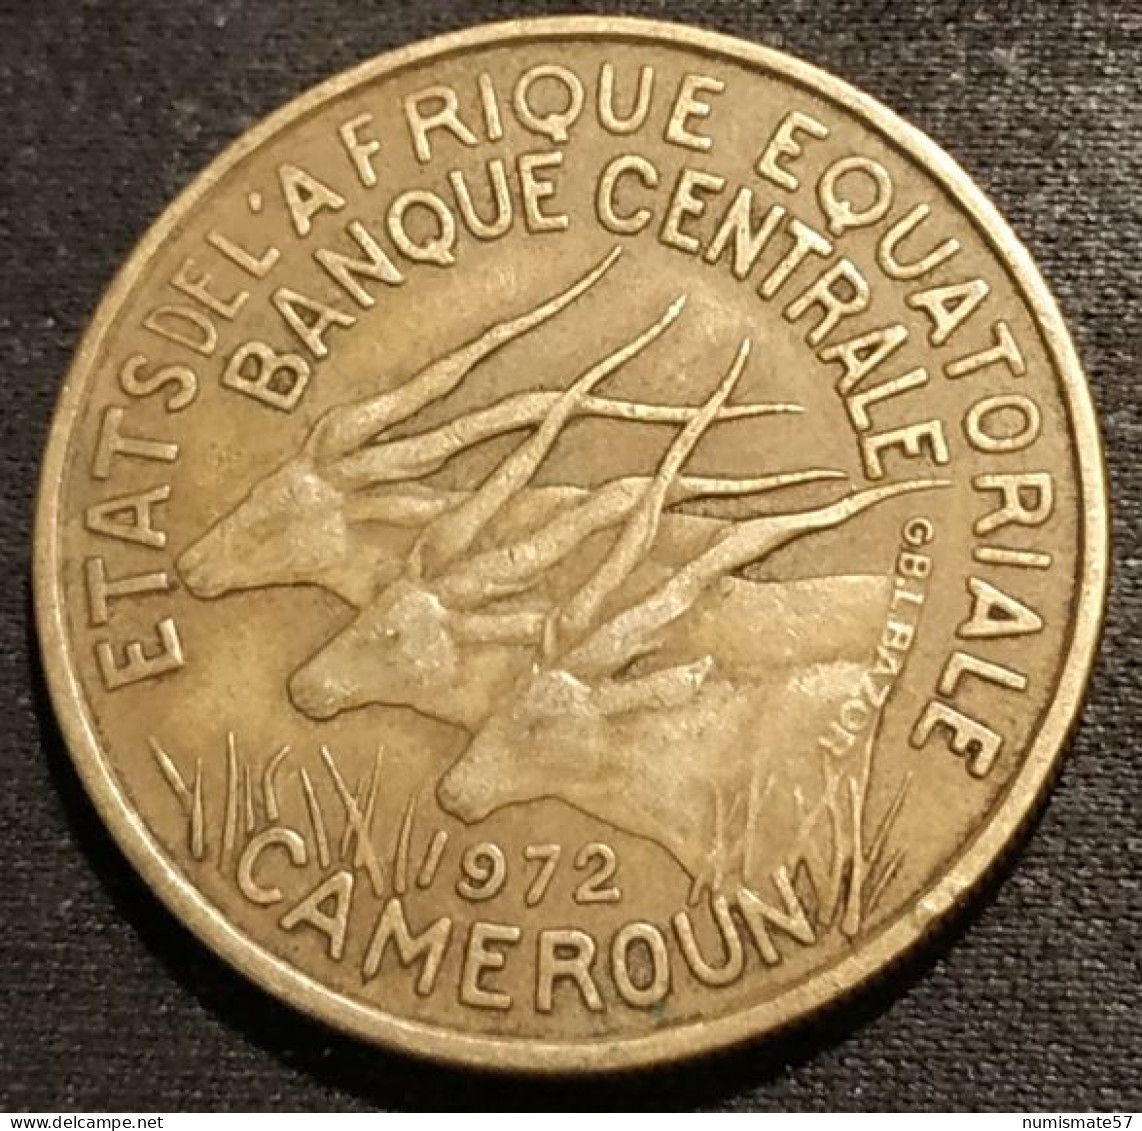 CAMEROUN - 25 FRANCS 1972 - KM 4a - ( ETATS DE L'AFRIQUE EQUATORIALE ) - Camerún